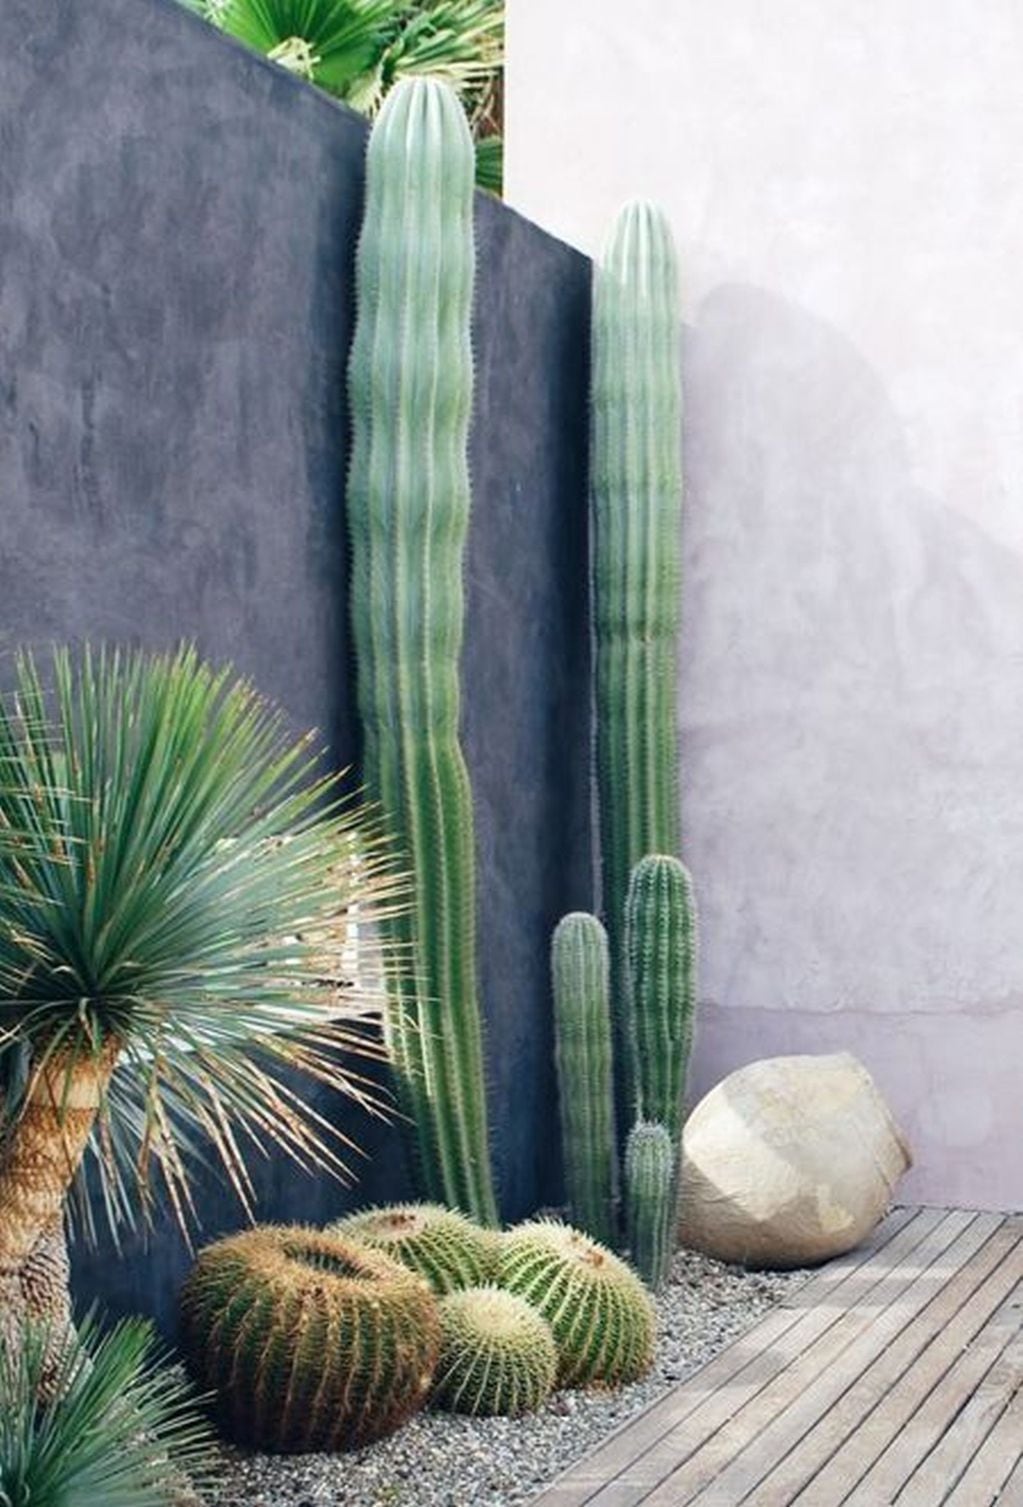 Los cactus deben estar en espacios exteriores